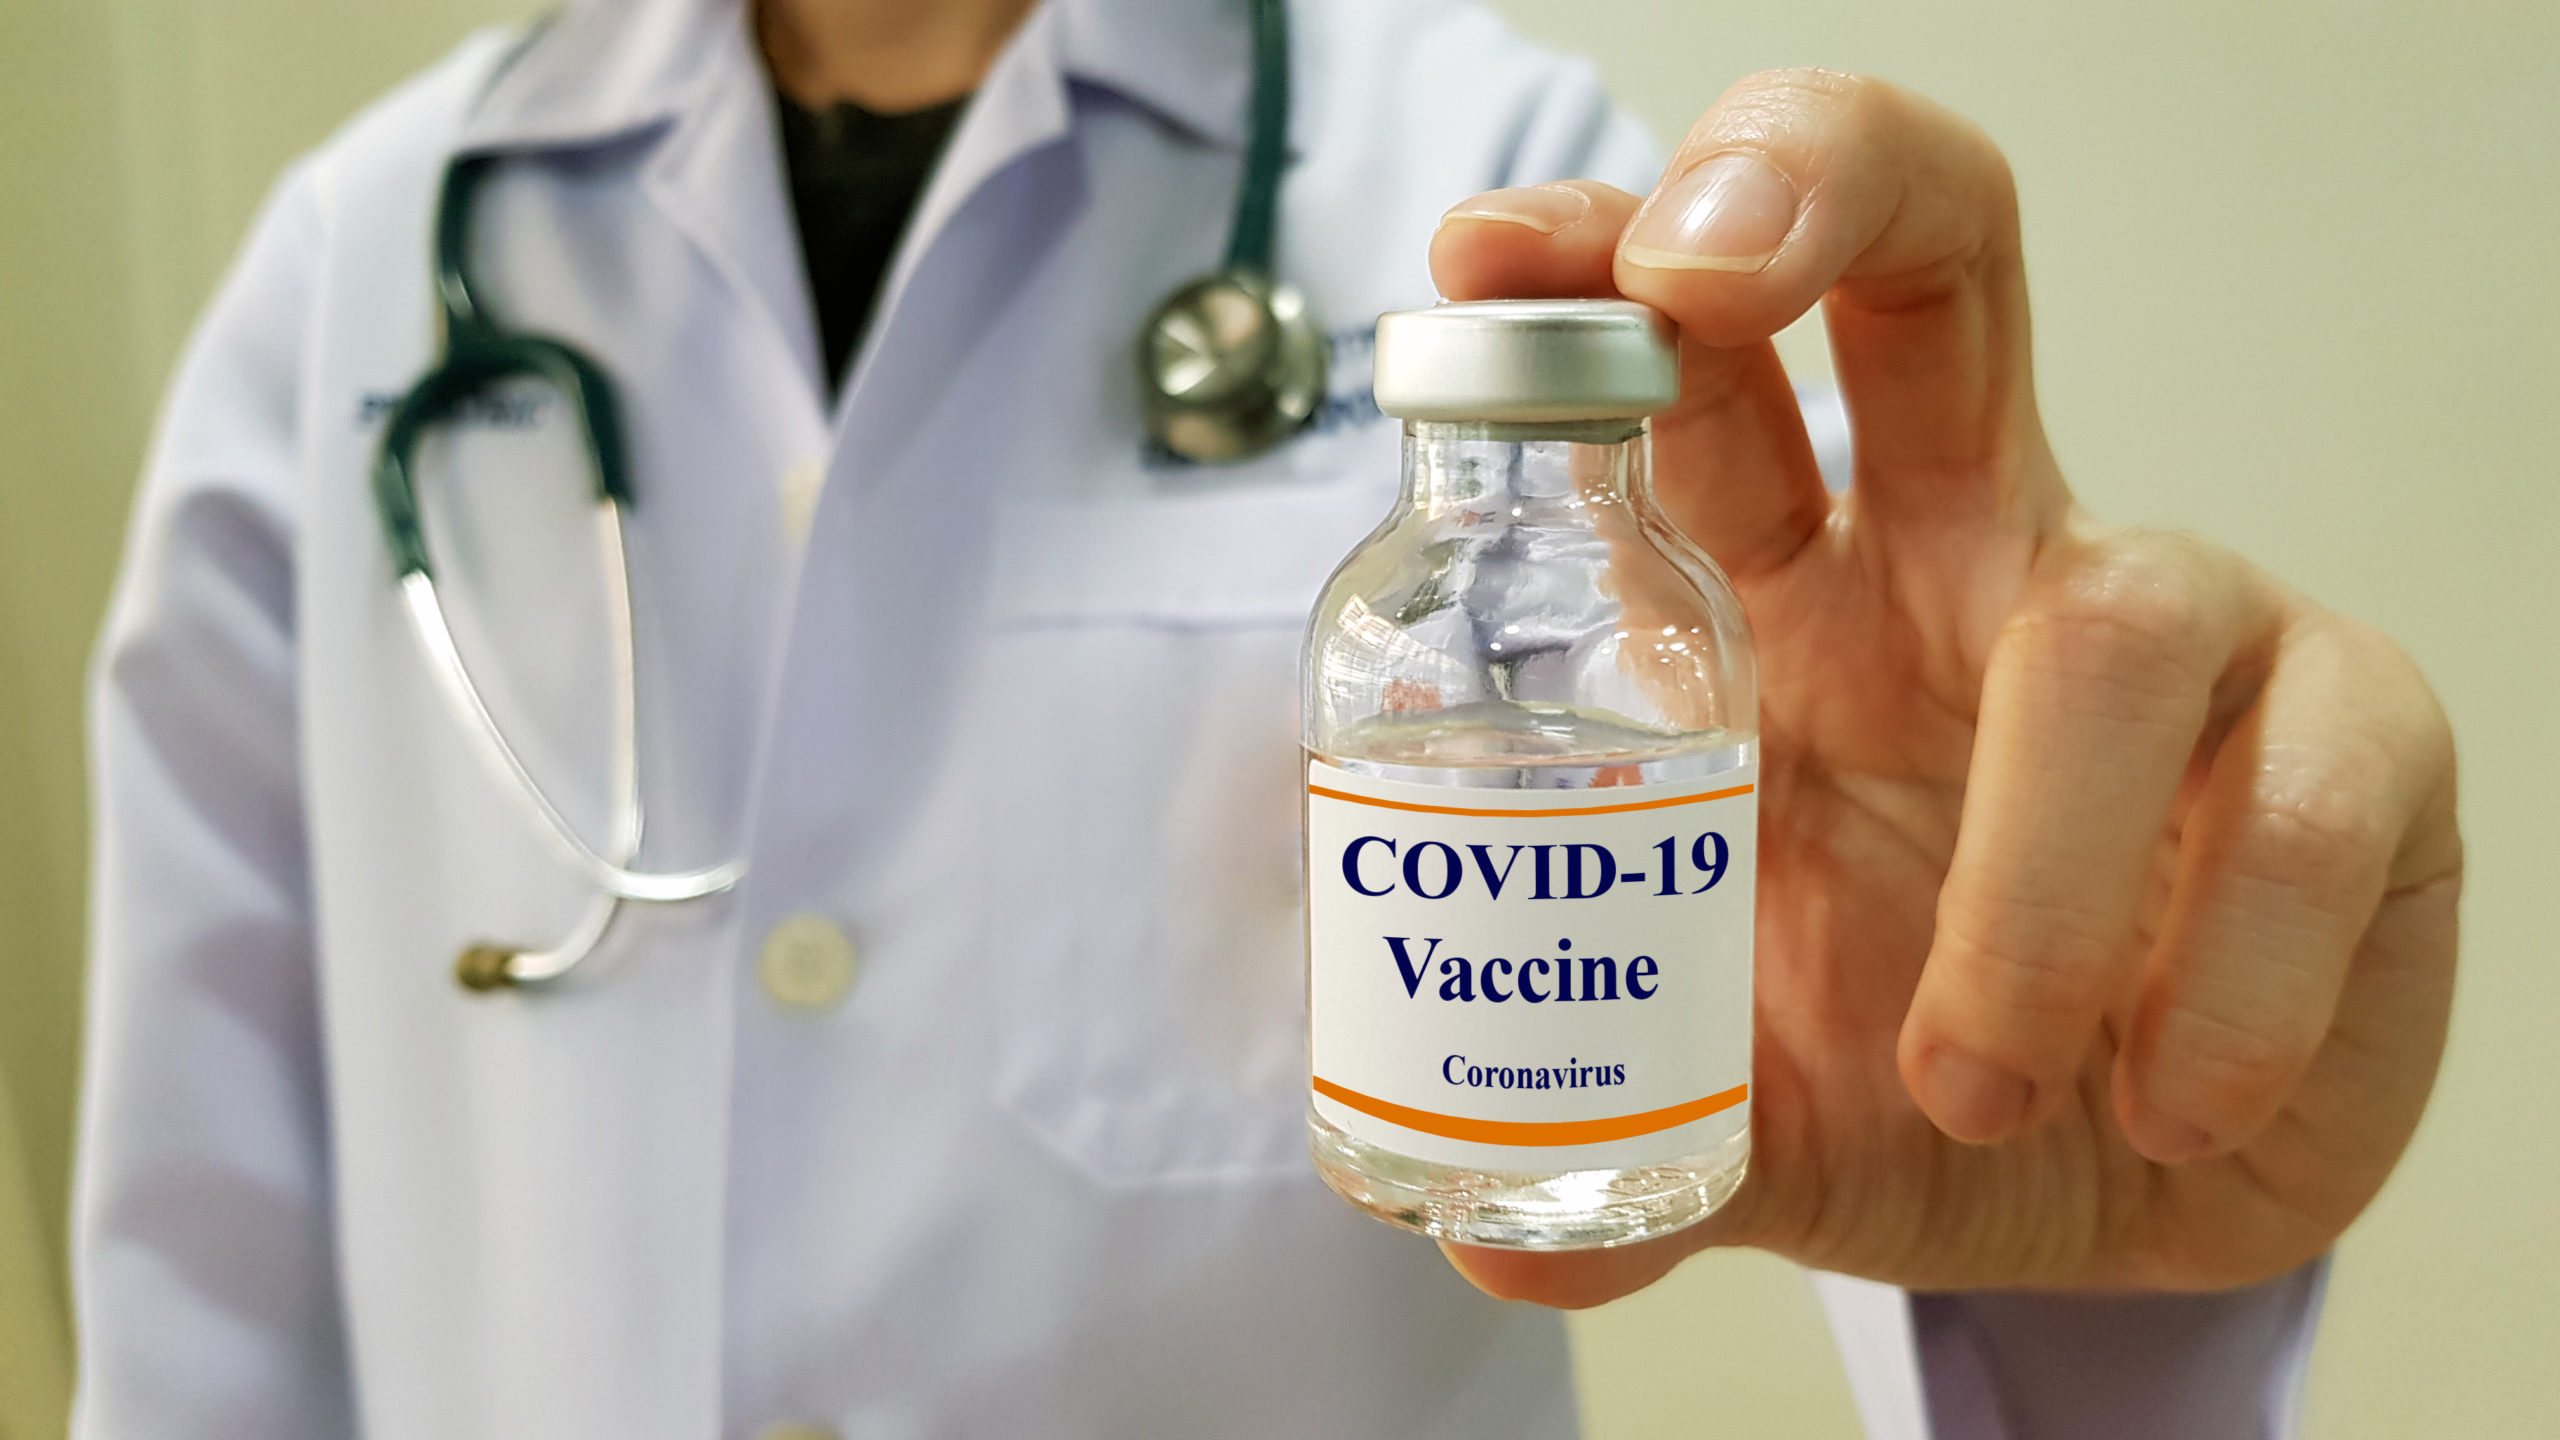 Vacunas contra coronavirus, entregadas en 94% de los hospitales covid de México: Sedena